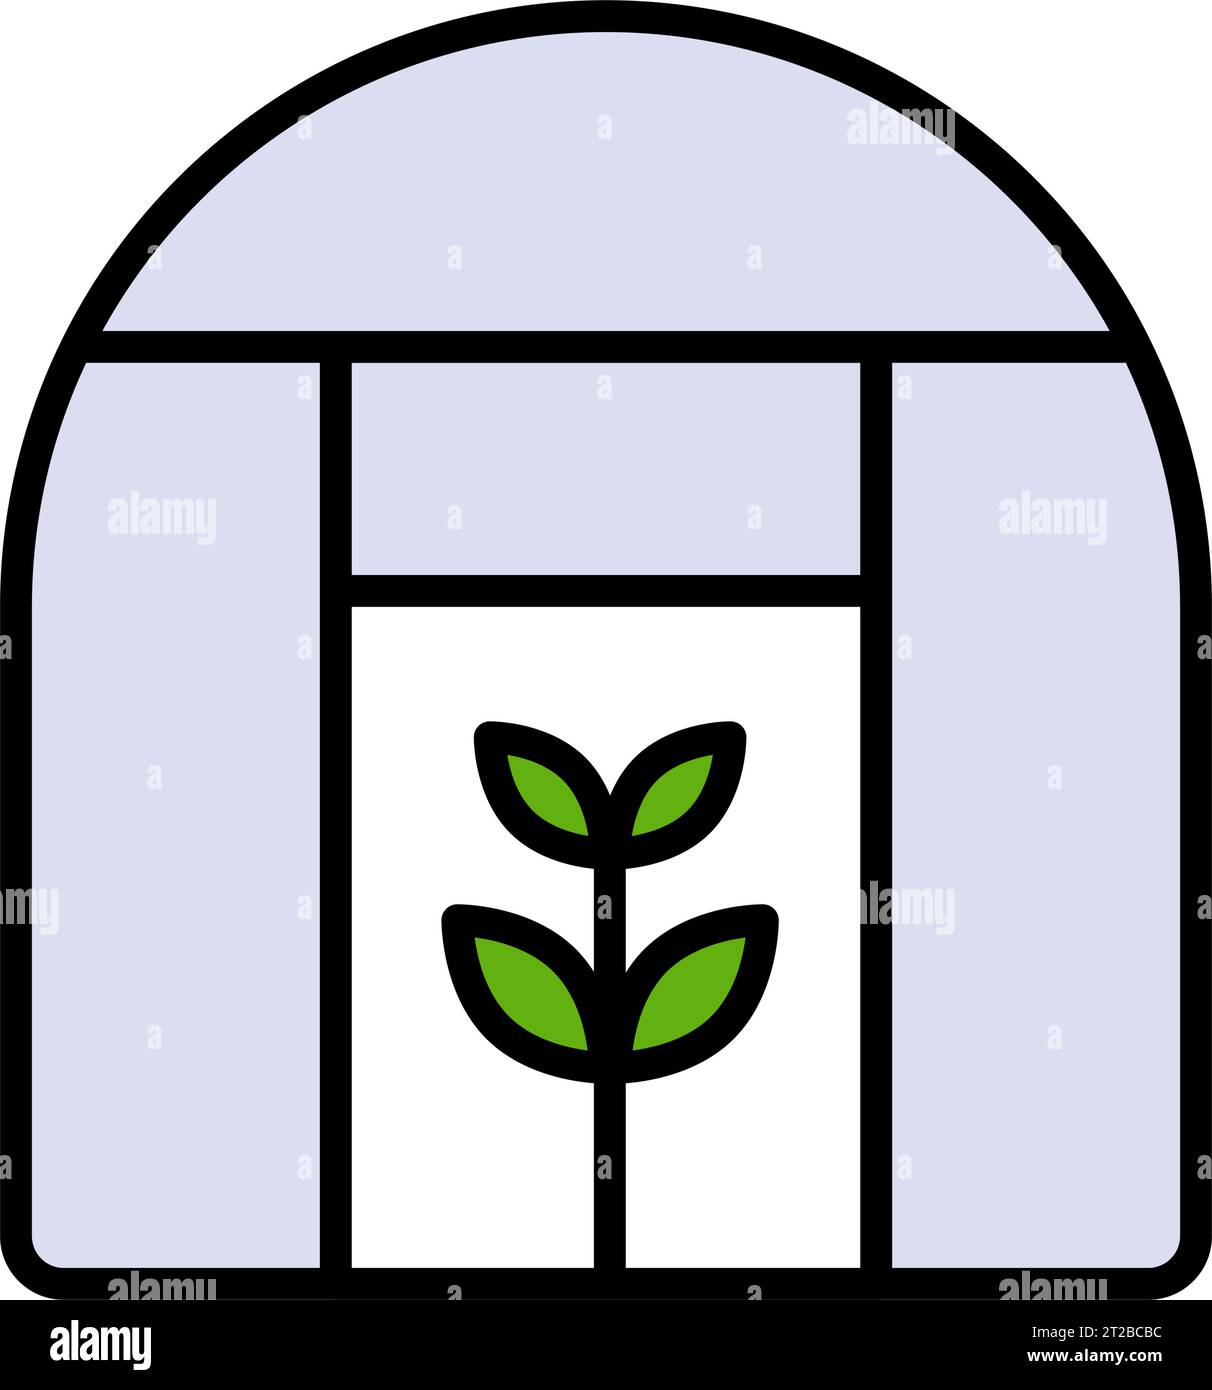 Icône de maison écologique, logo énergie verte dans la maison, bâtiment écologique, concept de serre, architecture écologique moderne, symbole plat sur fond blanc Illustration de Vecteur